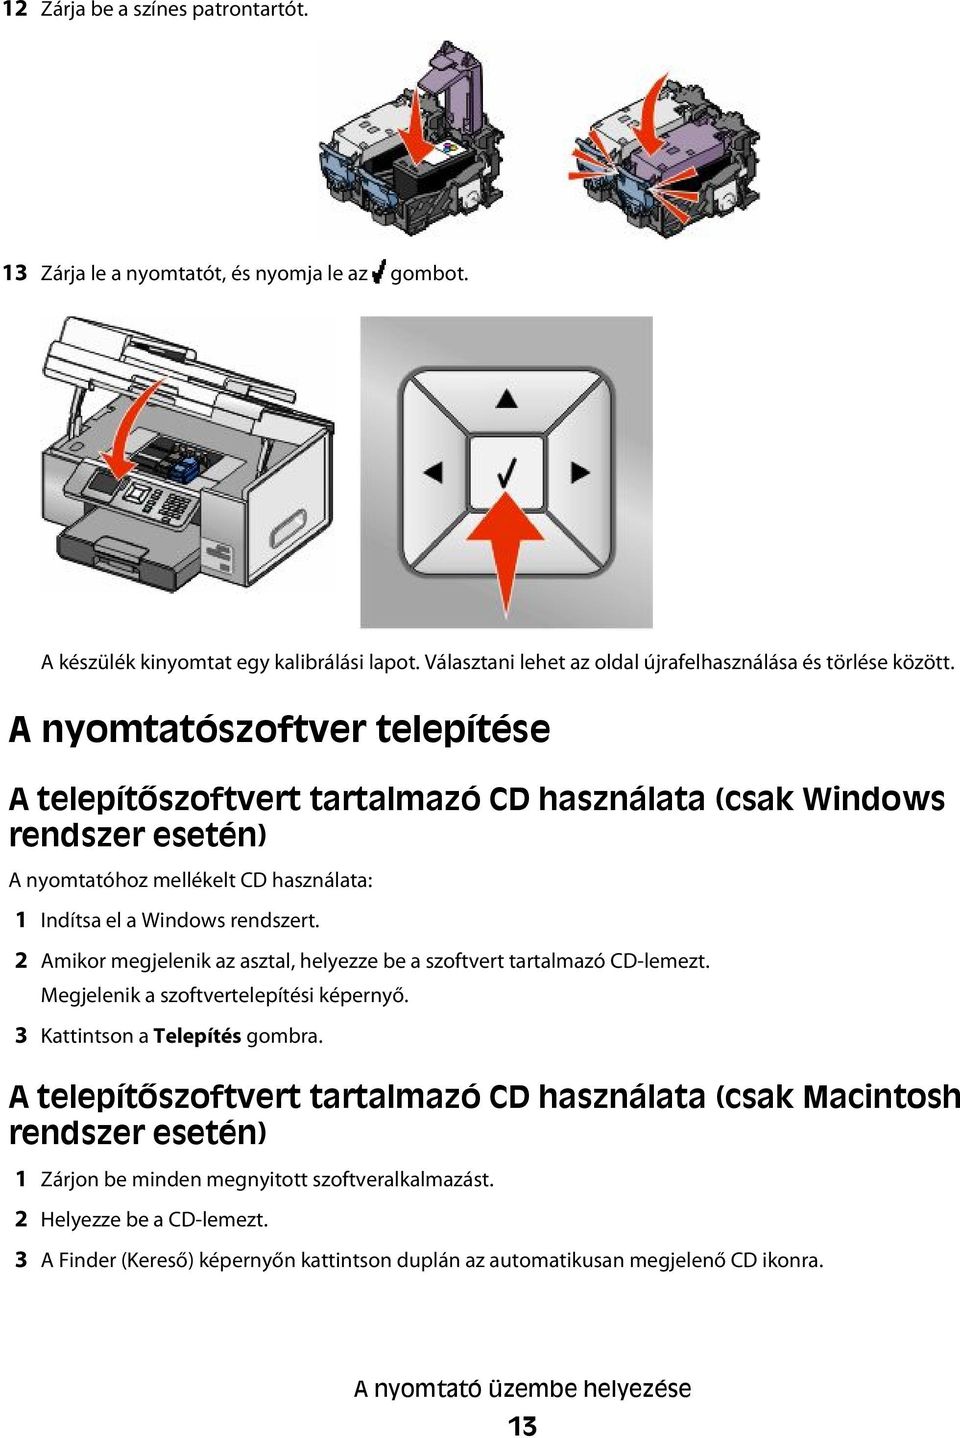 2 Amikor megjelenik az asztal, helyezze be a szoftvert tartalmazó CD-lemezt. Megjelenik a szoftvertelepítési képernyő. 3 Kattintson a Telepítés gombra.